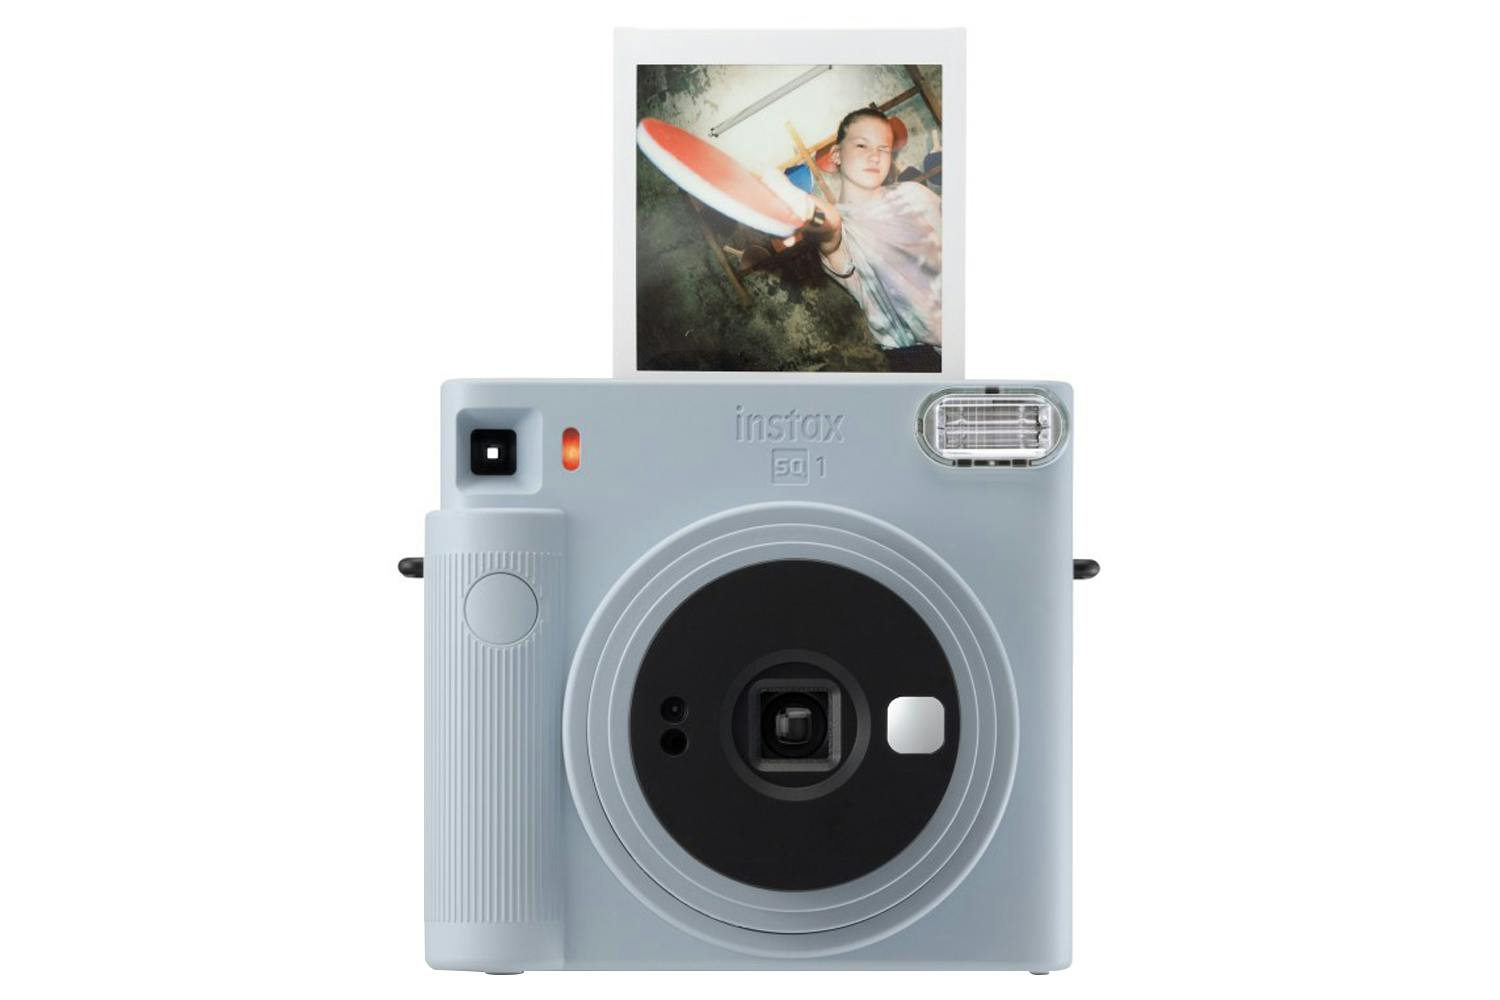 Fujifilm Instax Square SQ1 Camera Case. Instax SQ1 Camera Bag. Fujifilm  Instax SQ1 Case With Strap. Protection Case for Instax Square 1. 